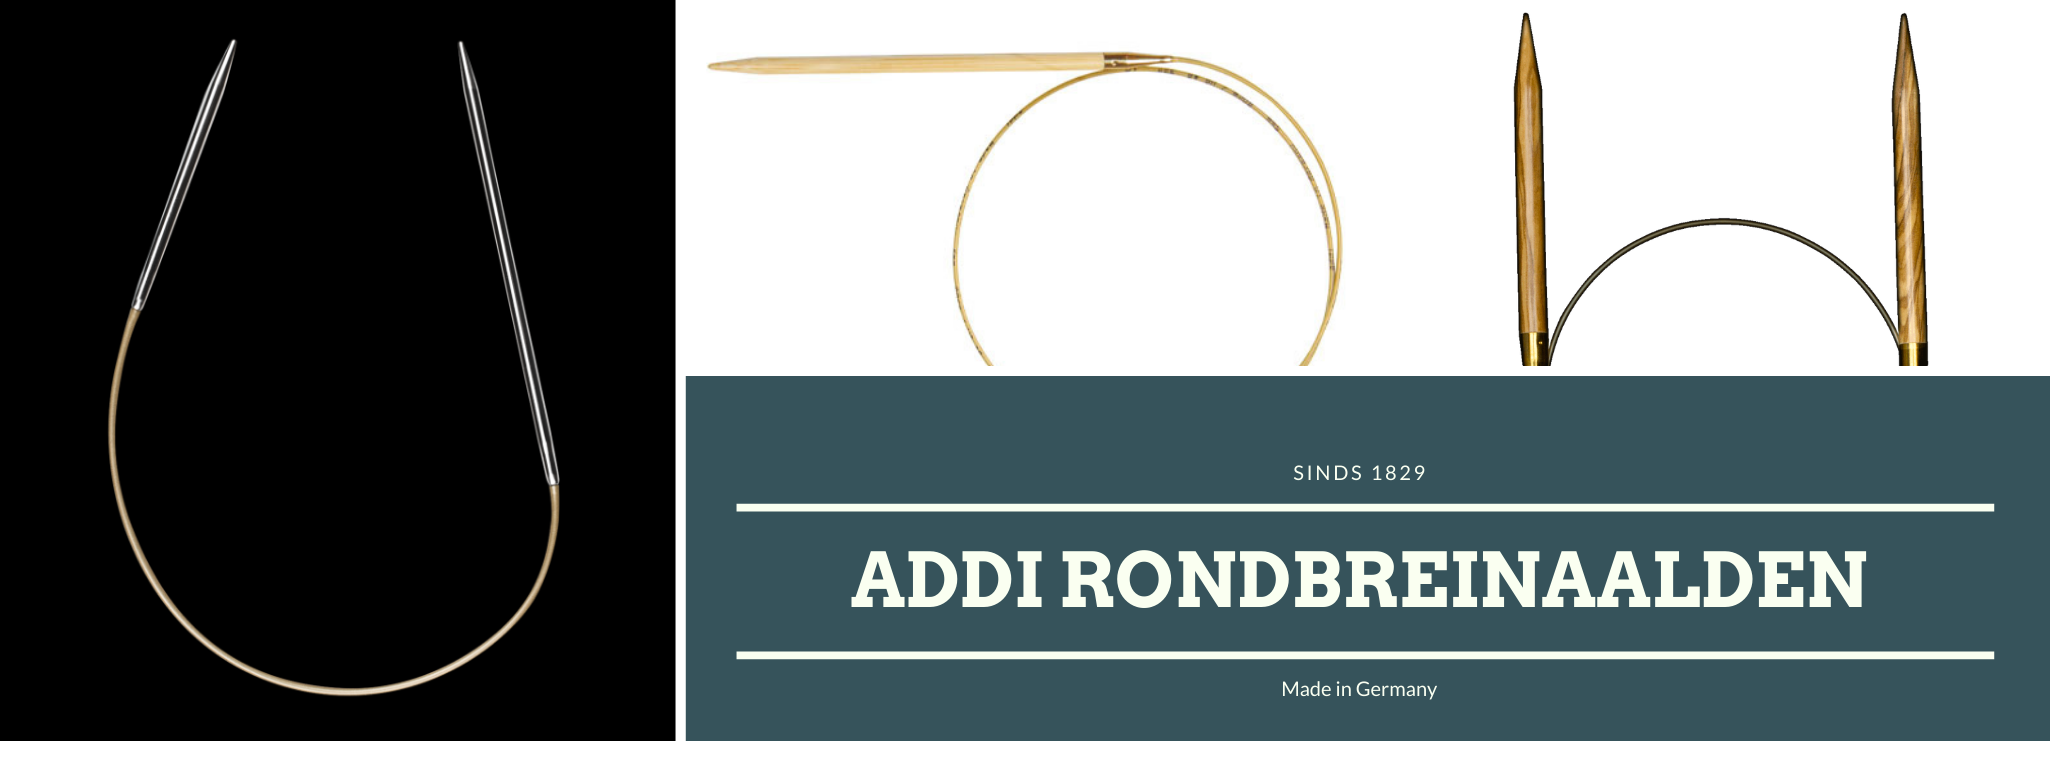 Banner Addi Rondbreinaalden